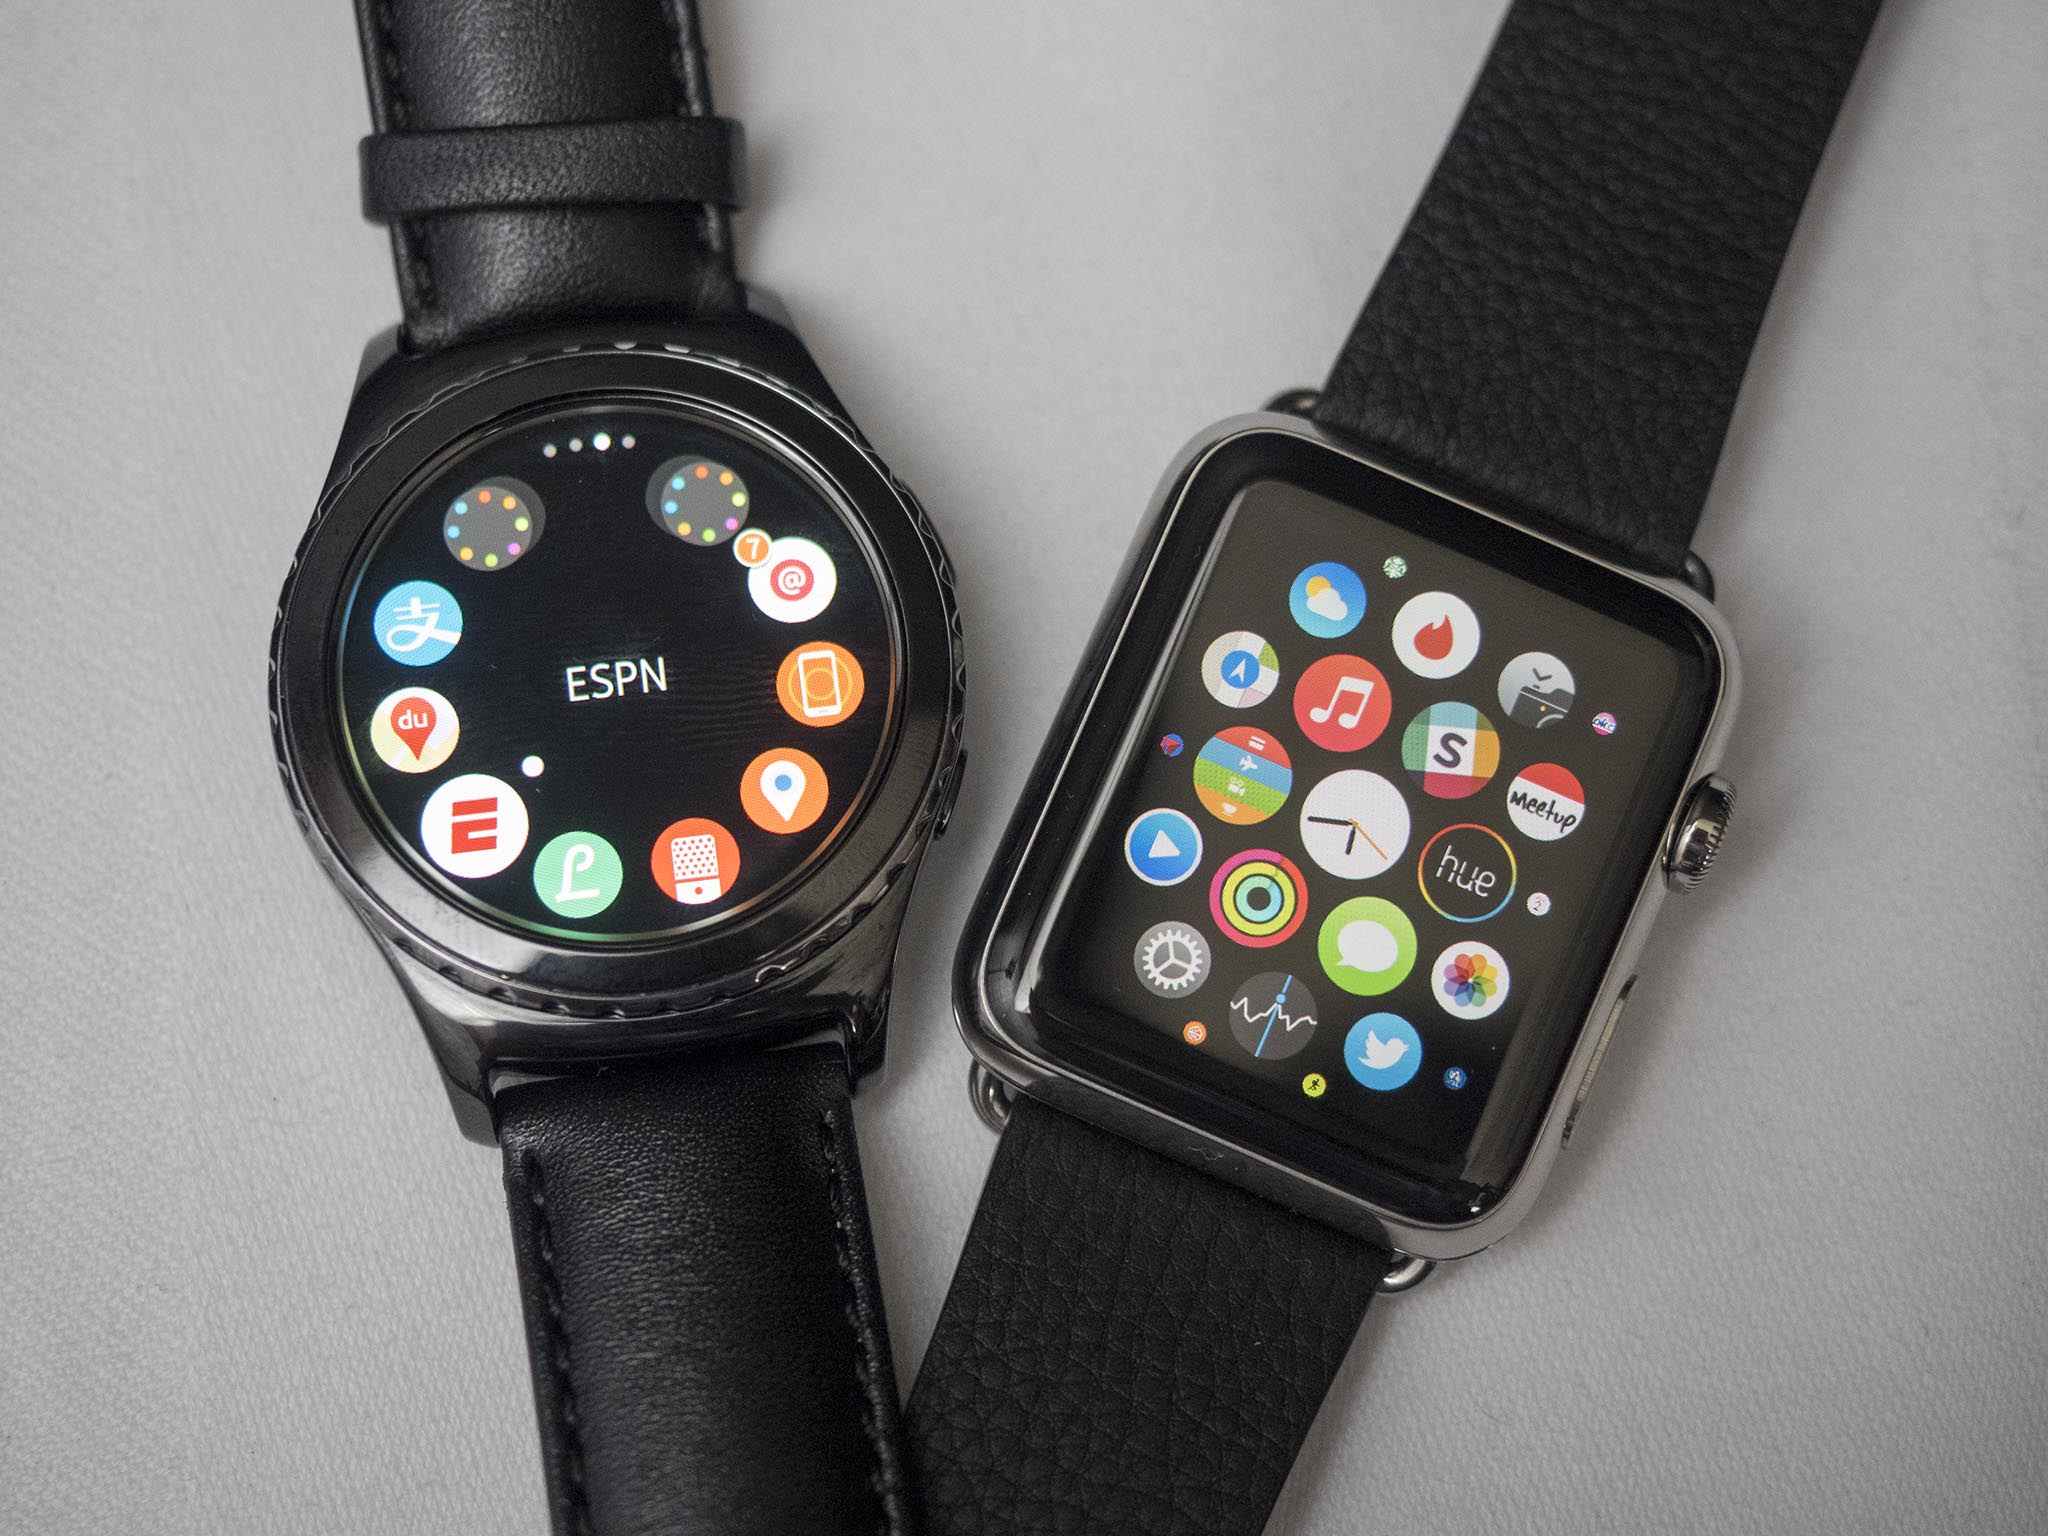 samsung version of apple watch